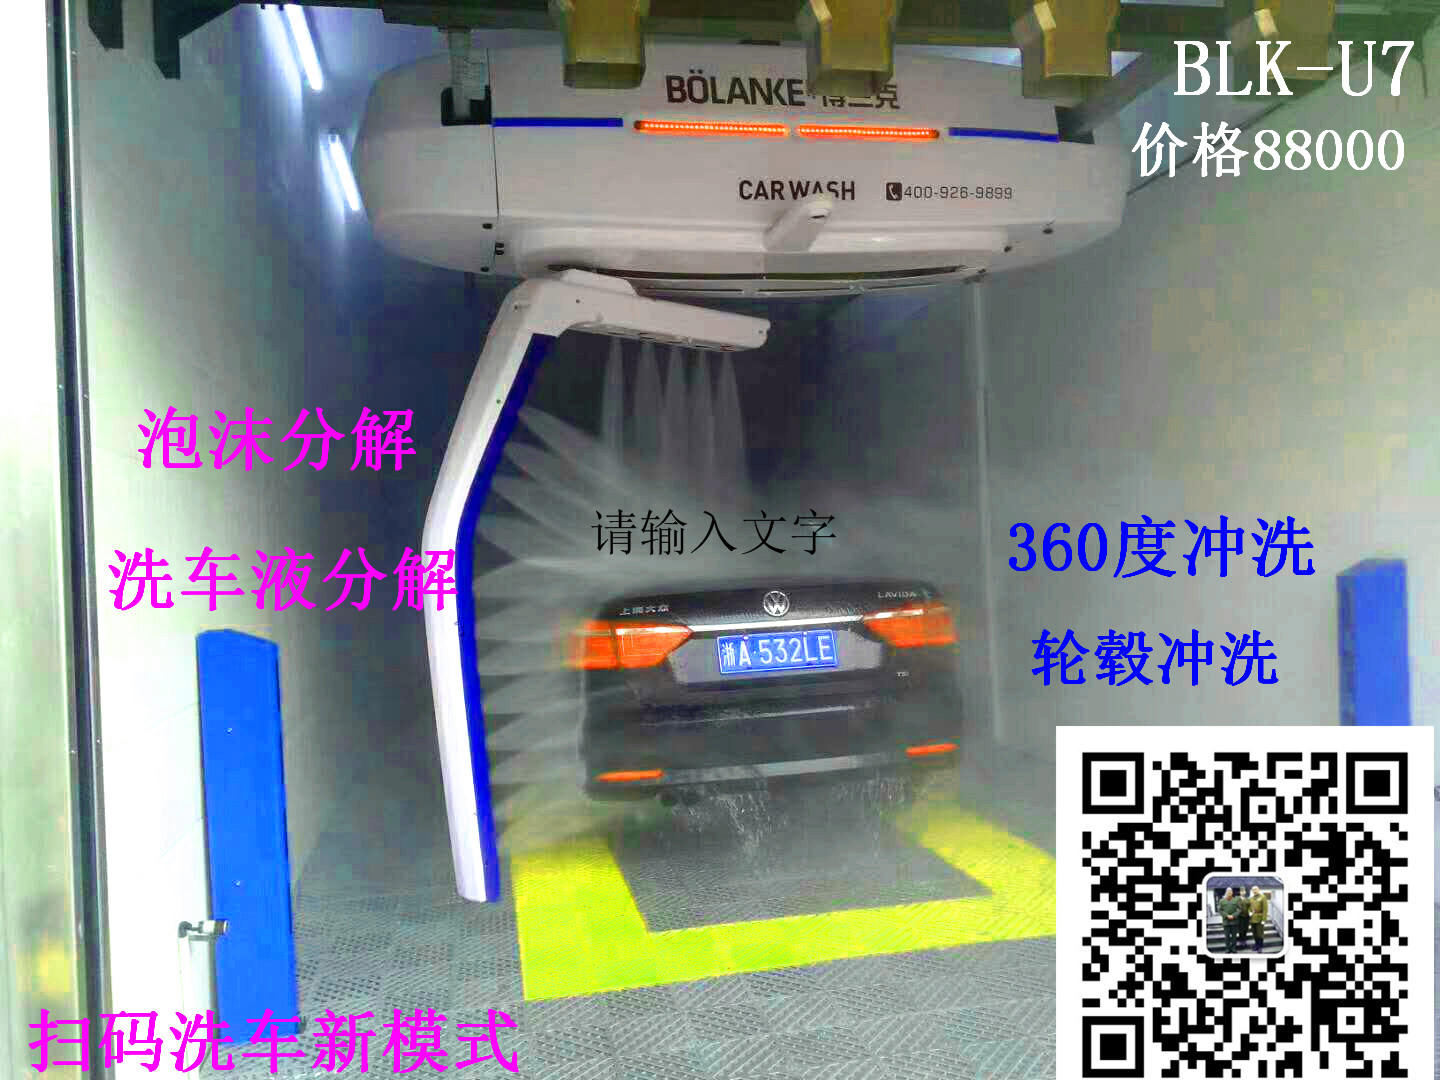 新版洗车设备二维码扫码自助洗车机扫码自助洗车机博兰克新款U7图片